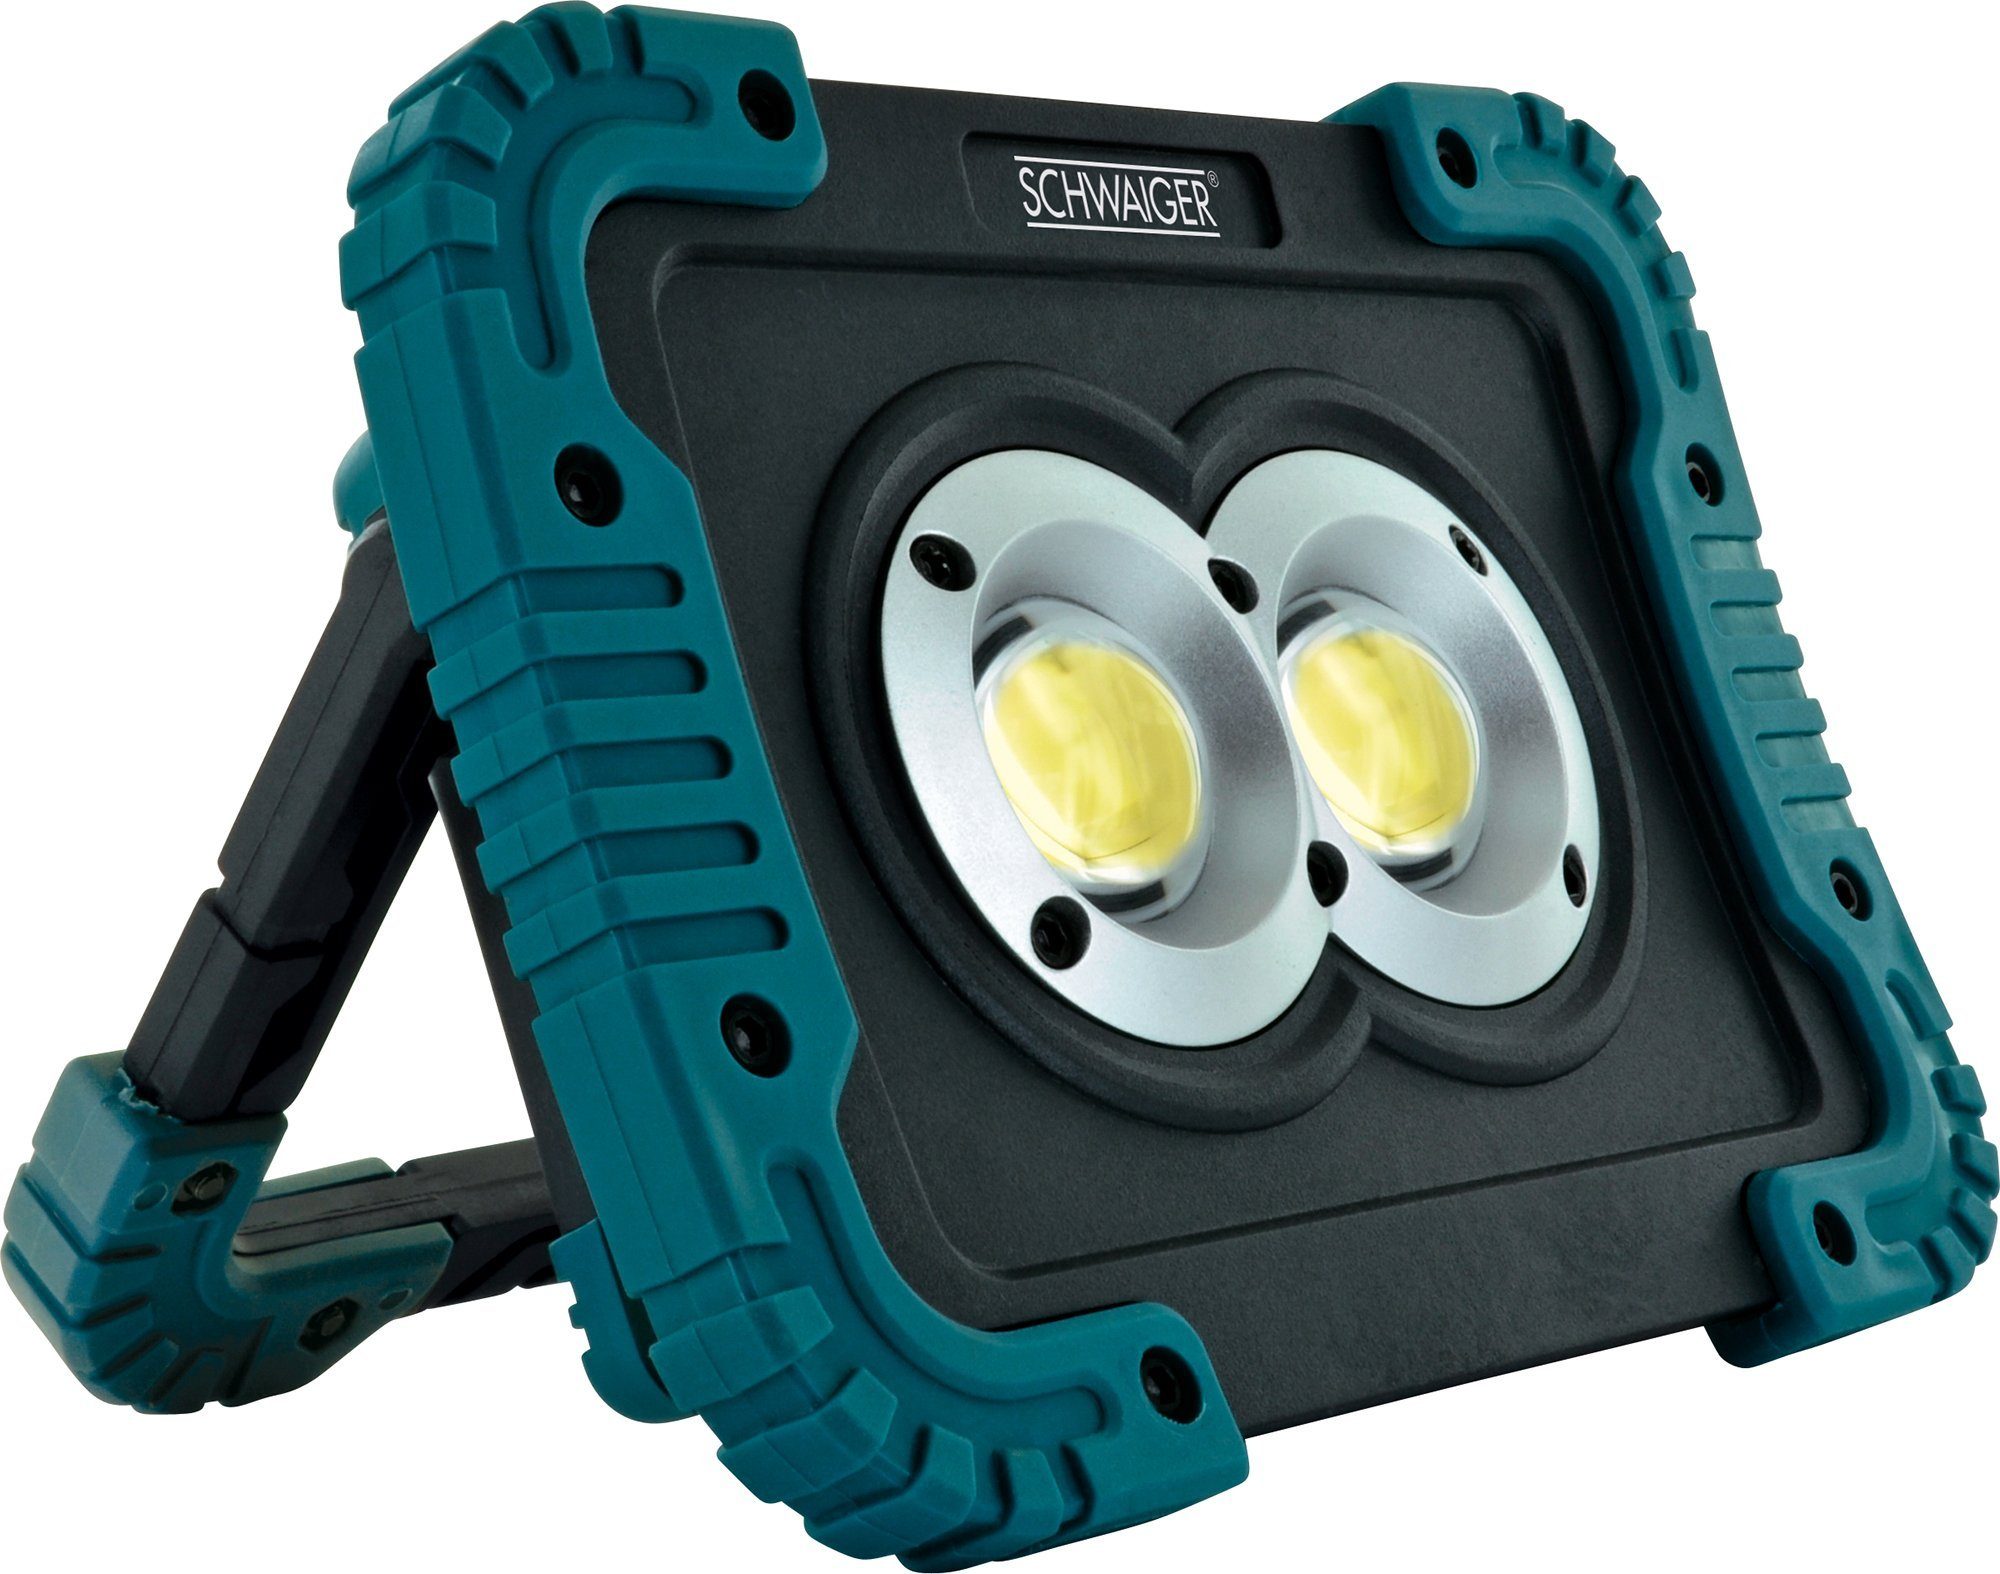 Schwaiger LED Arbeitsleuchte WLED210, Leuchtmodi rotierbarer 3 180° IPX4, Lichtmodi Weiß, 3 Standfuß, COB-LED, einstellbar